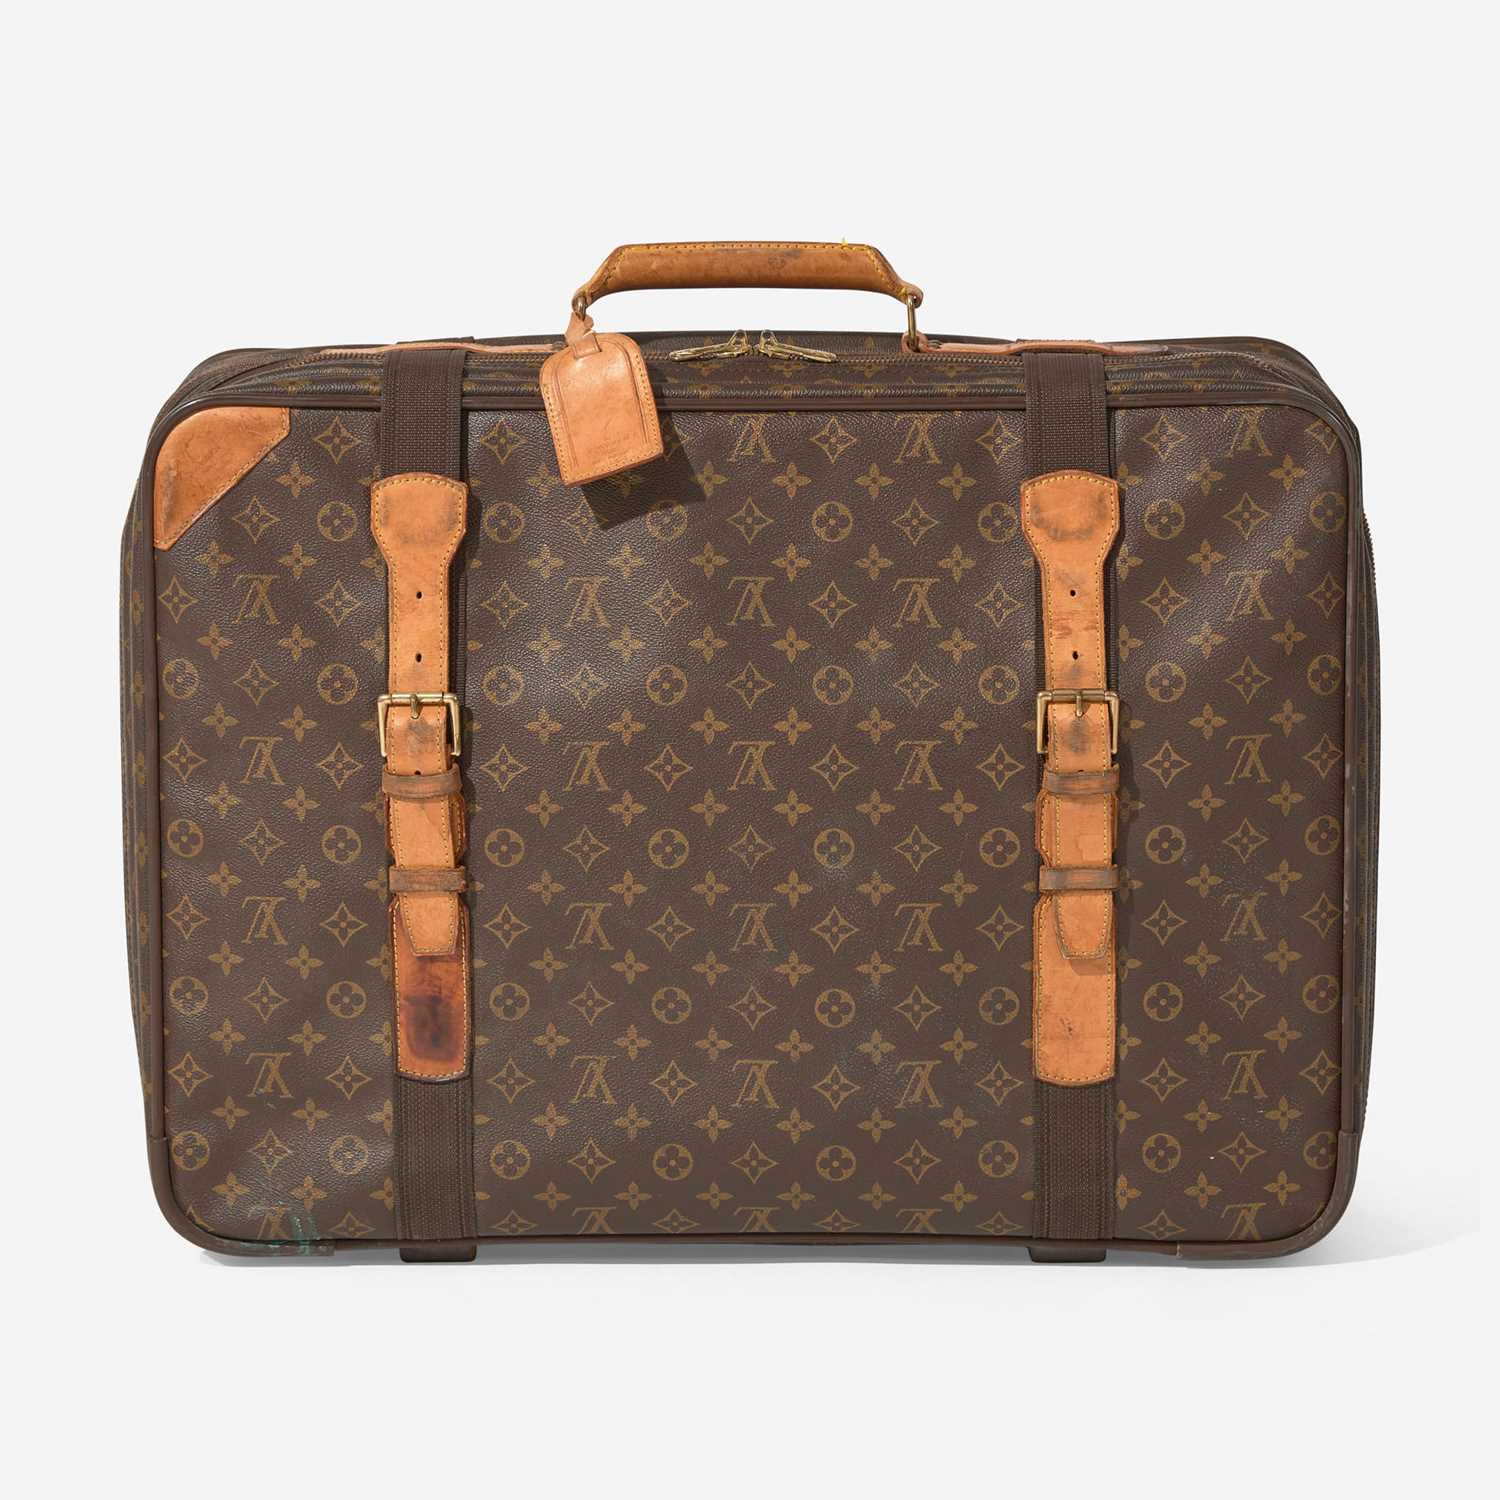 Lot 59 - A Louis Vuitton Suitcase